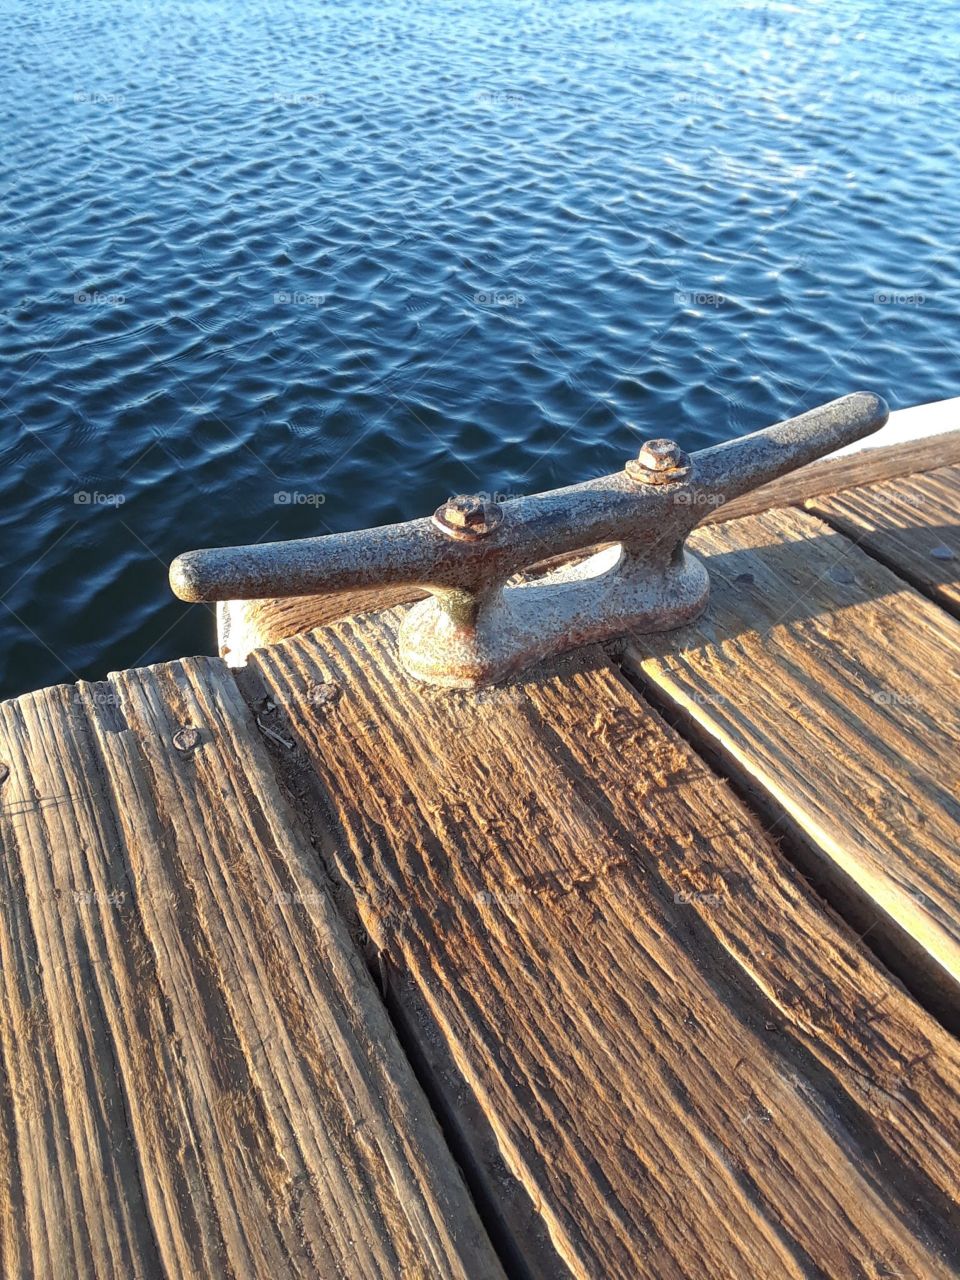 Dock tie wooden planks overlooking water 